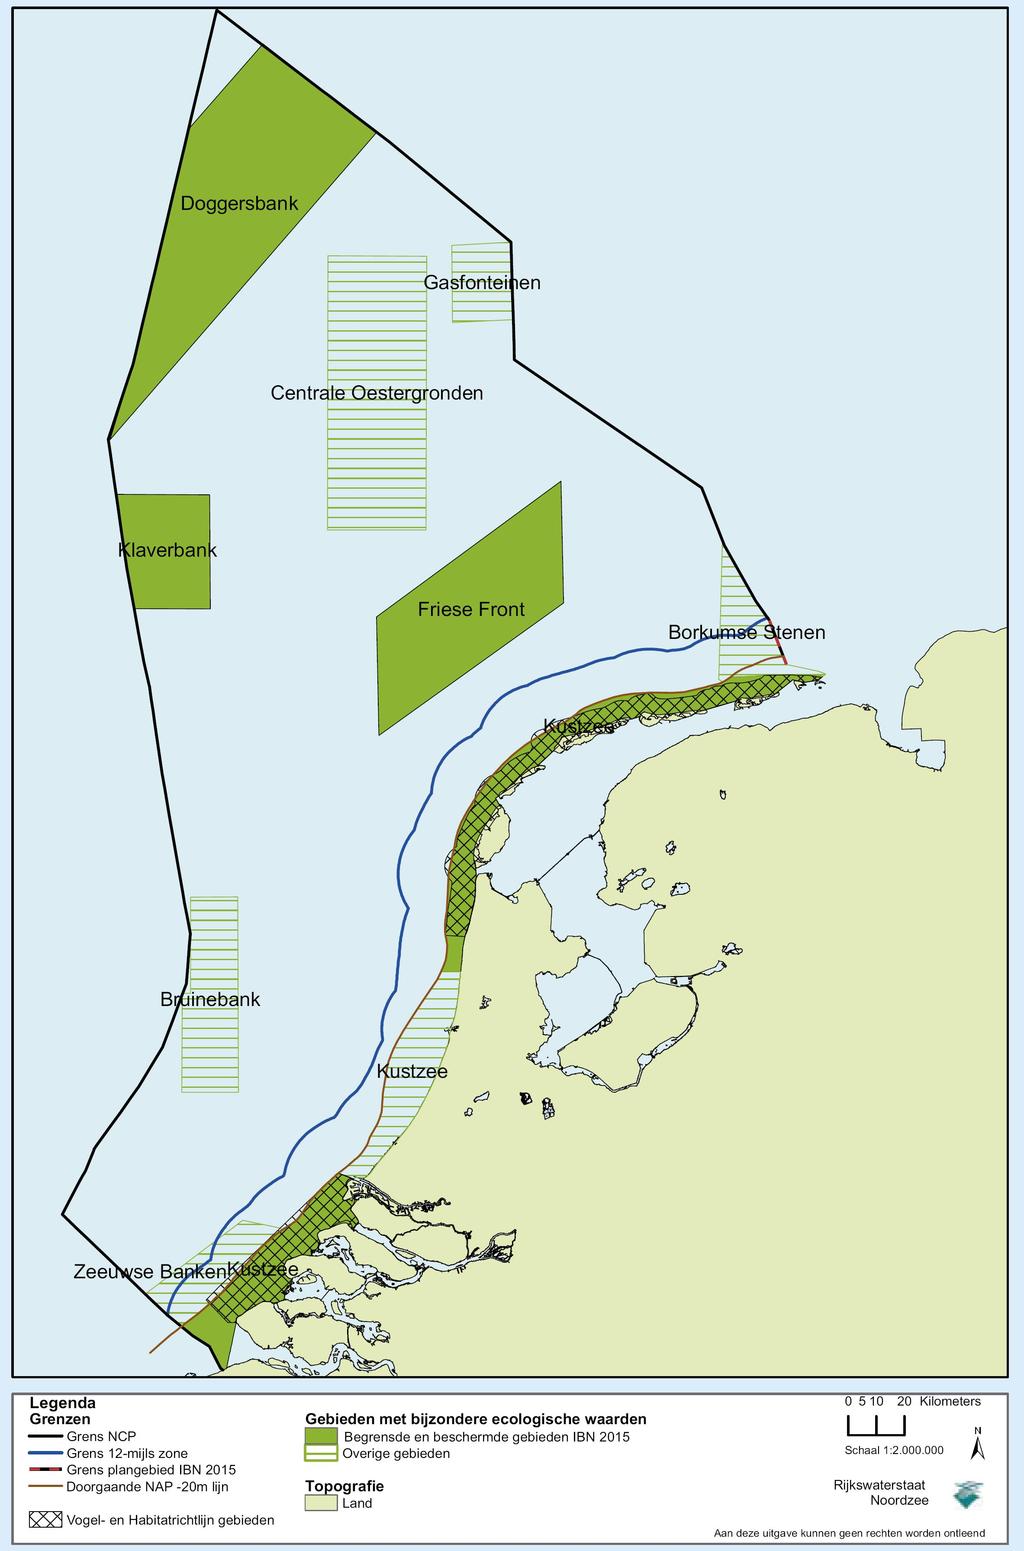 IBN2015 Met het IBN 2015 zijn grenzen vastgelegd van vier gebieden op de Noordzee waarvan de natuurwaarden extra bescherming krijgen.